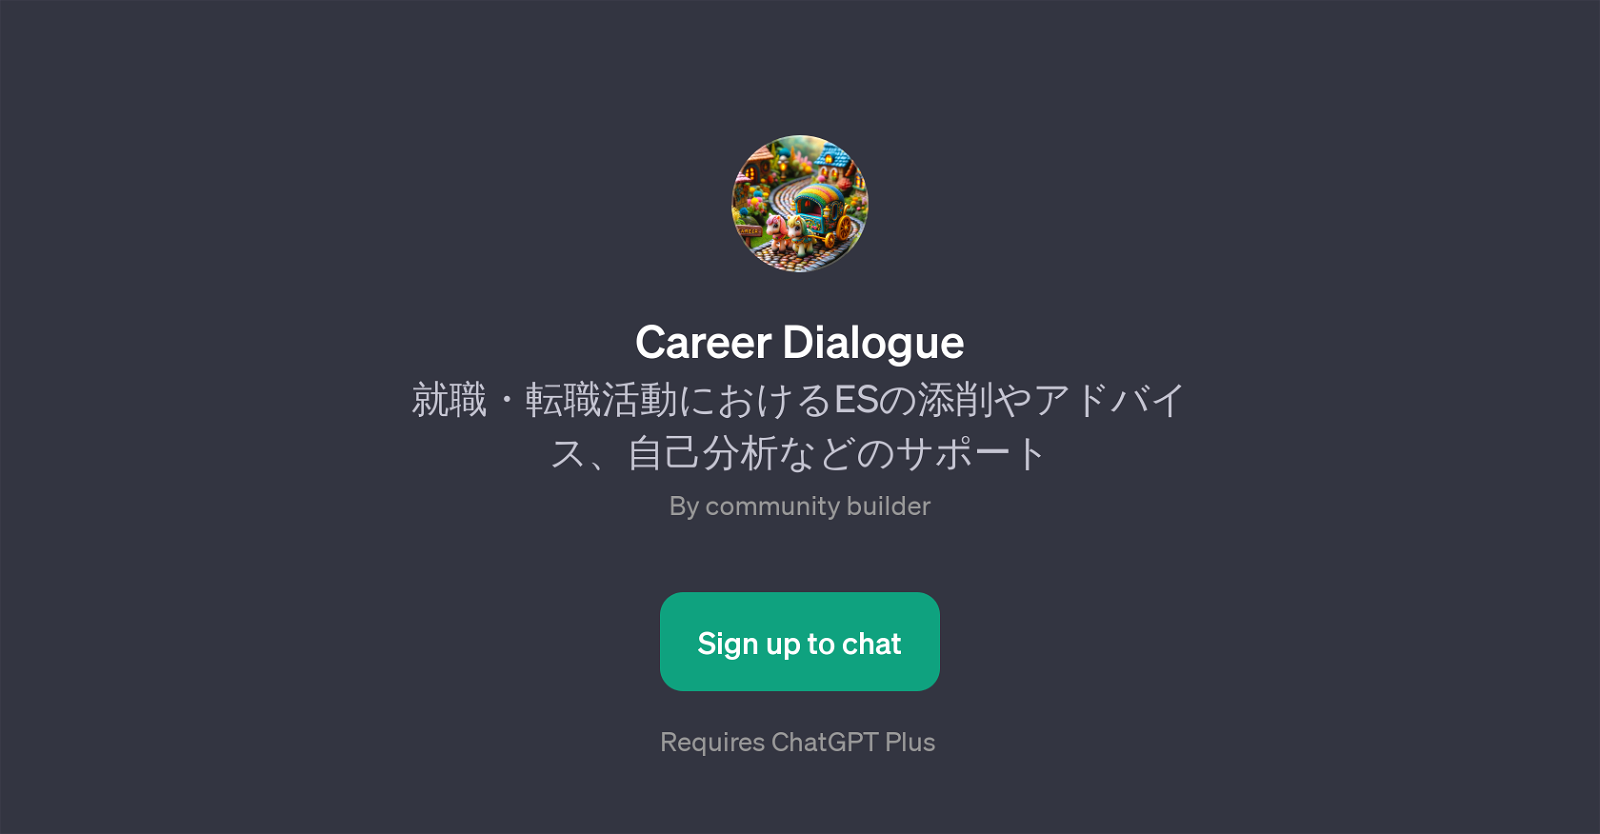 Career Dialogue website